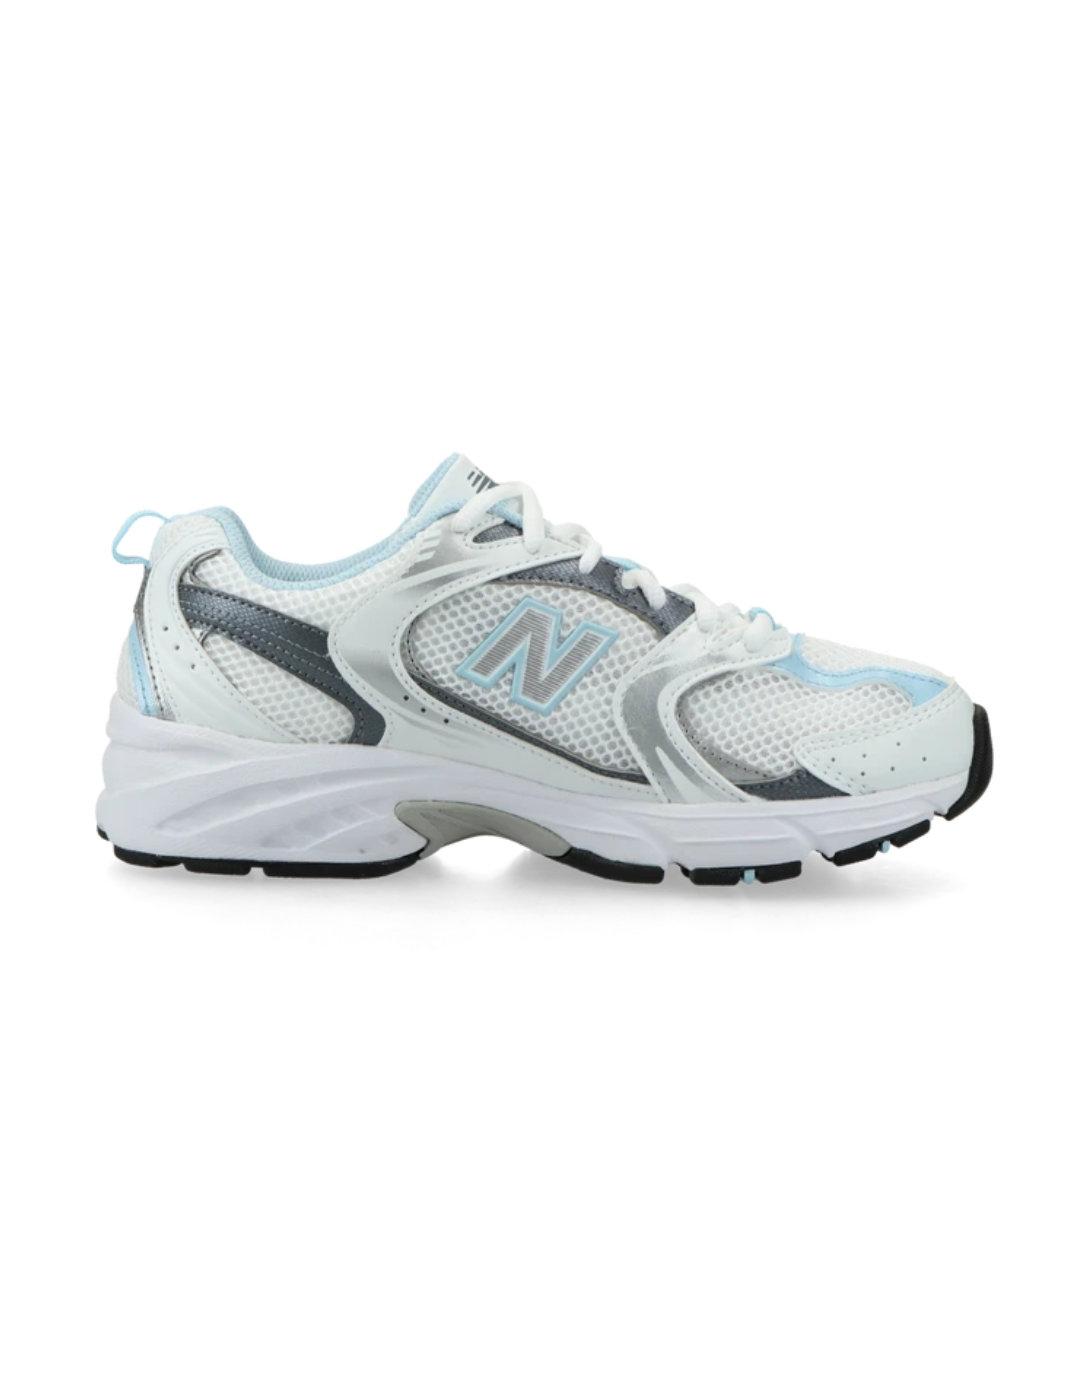 Zapatillas New Balance 530 blancas y azules para mujer